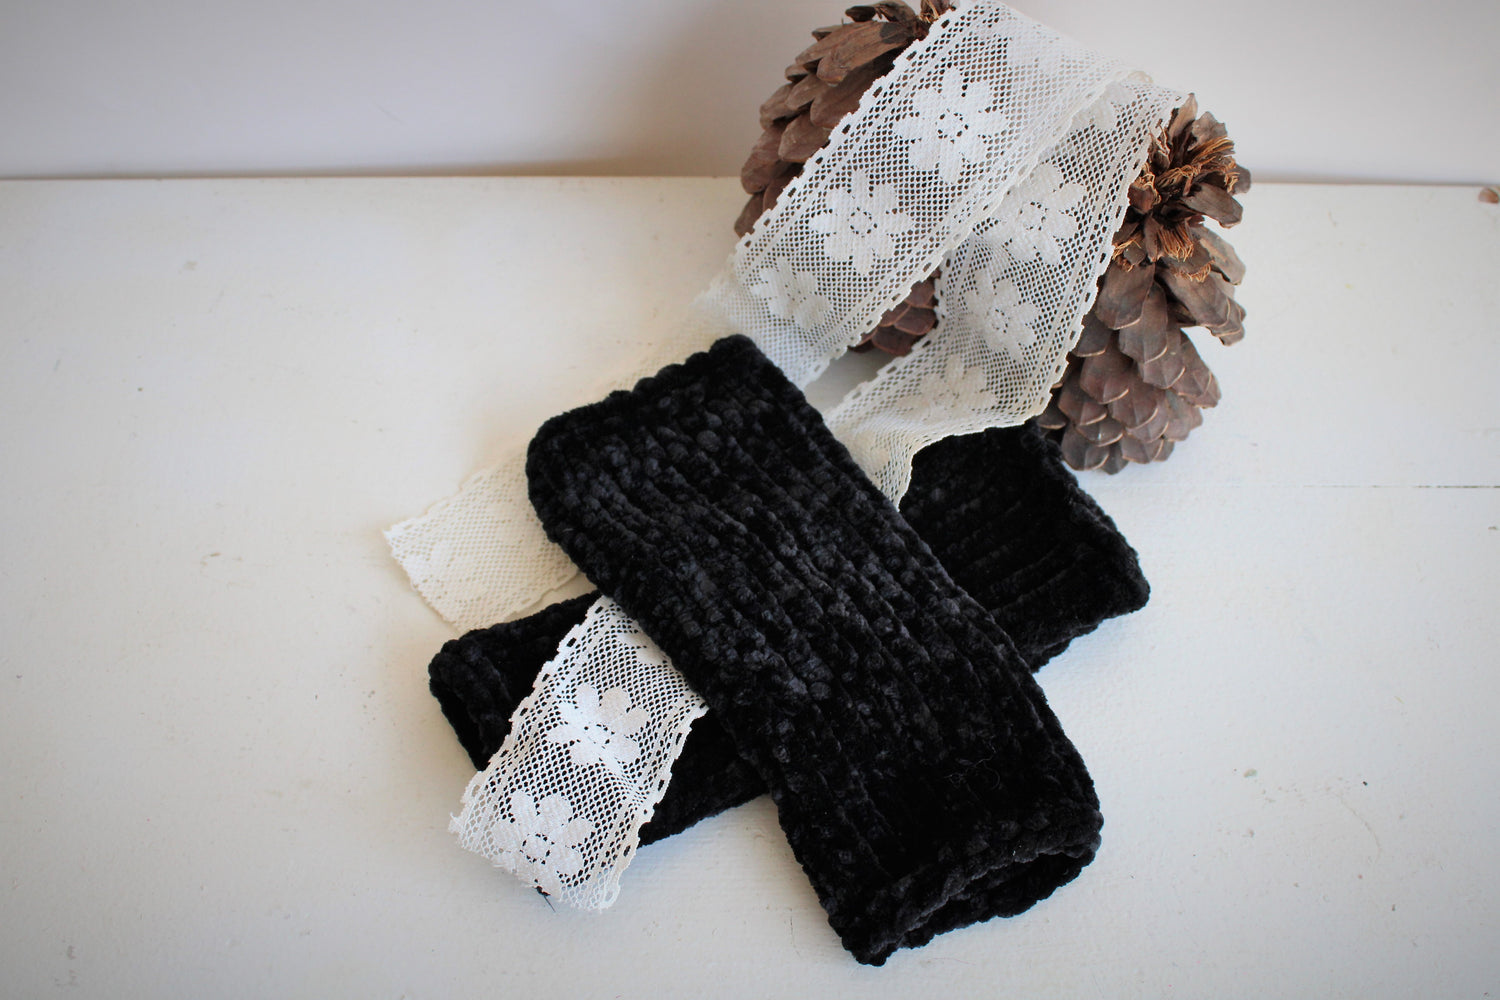 The "Black Velvet" Handknit Fingerless Gloves